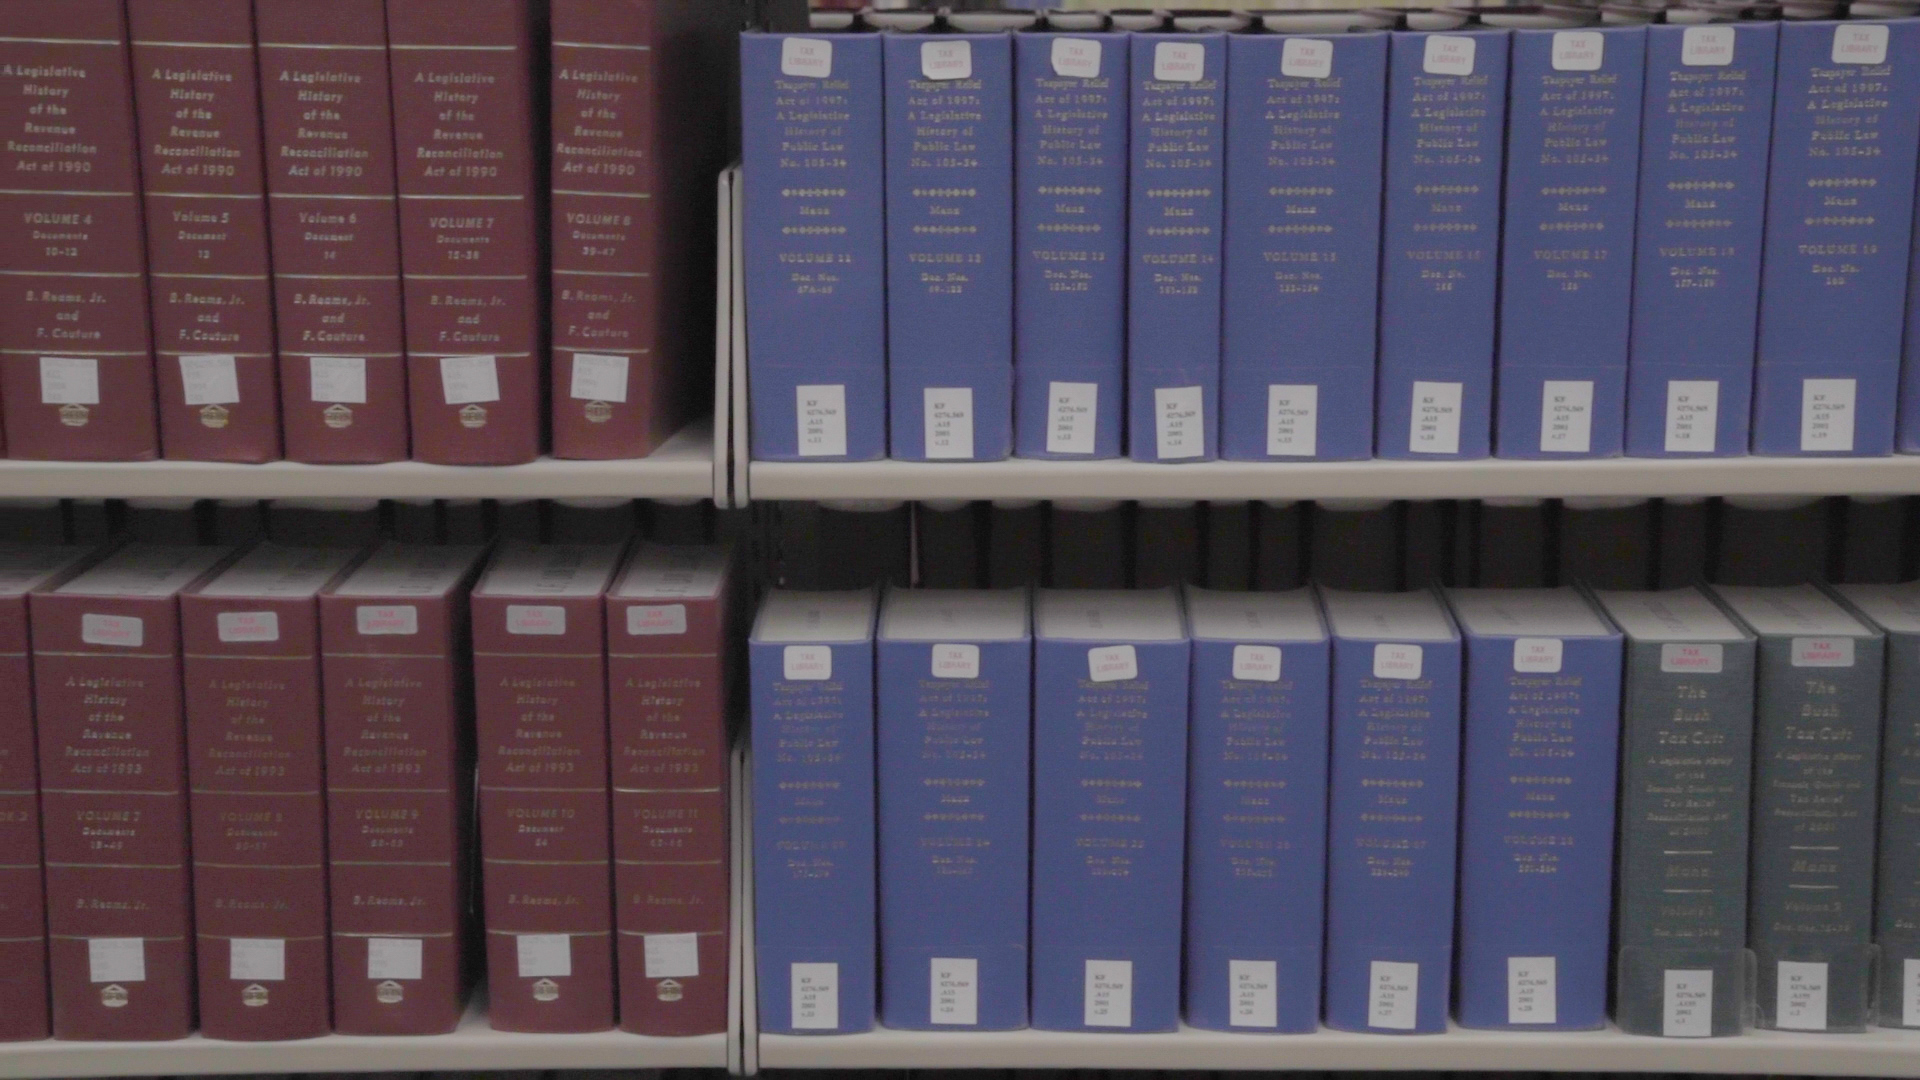 Law Bookshelves